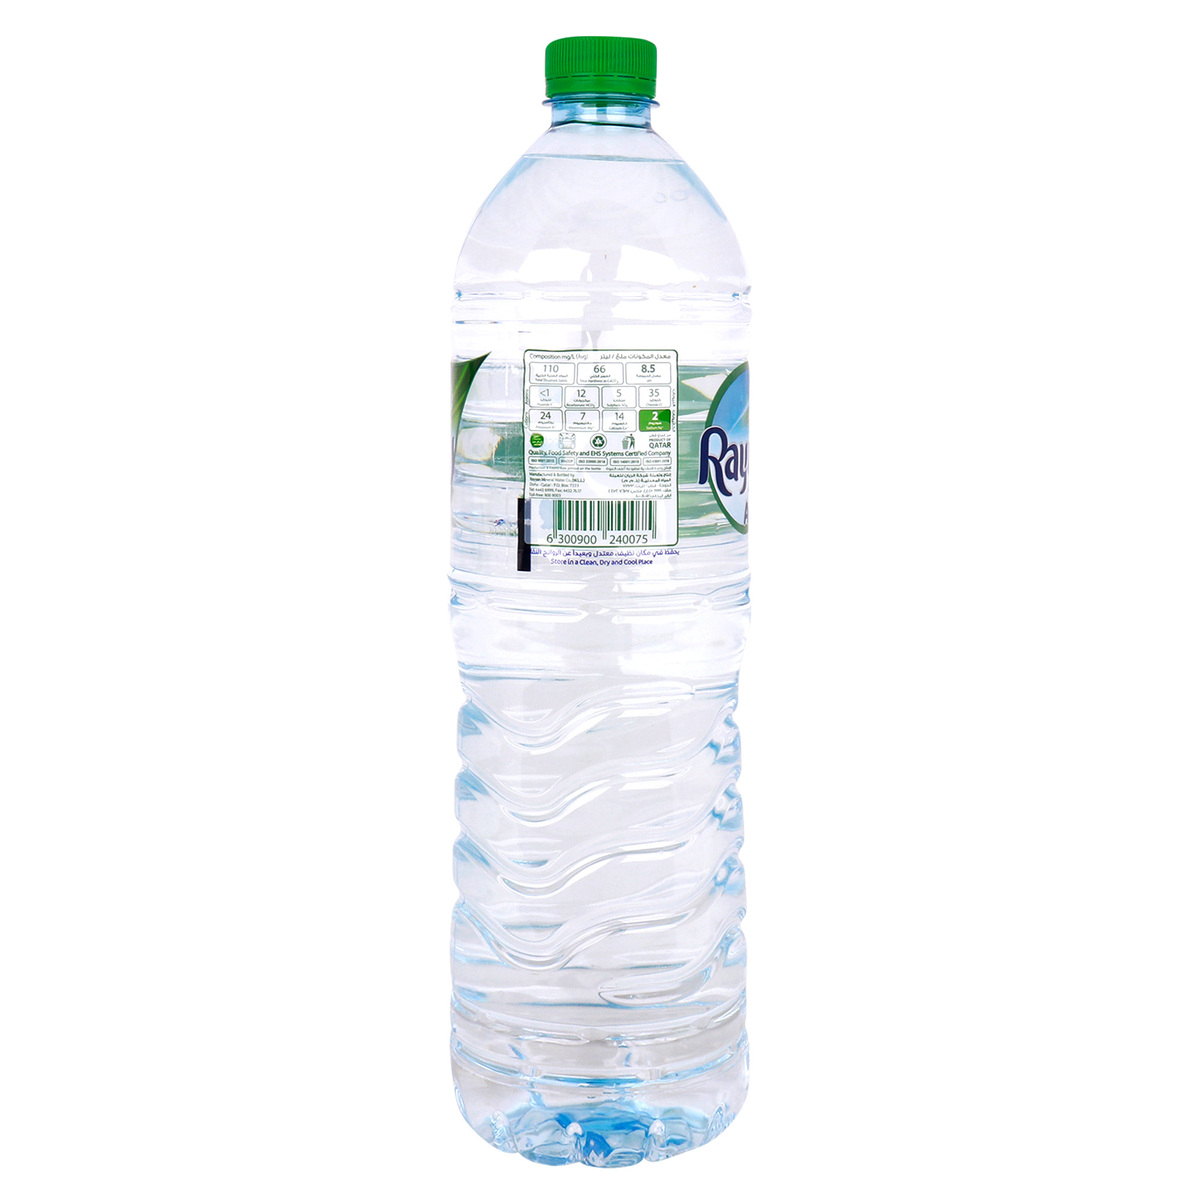 Rayyan Alkaline Natural Water 6 x 1.5Litre